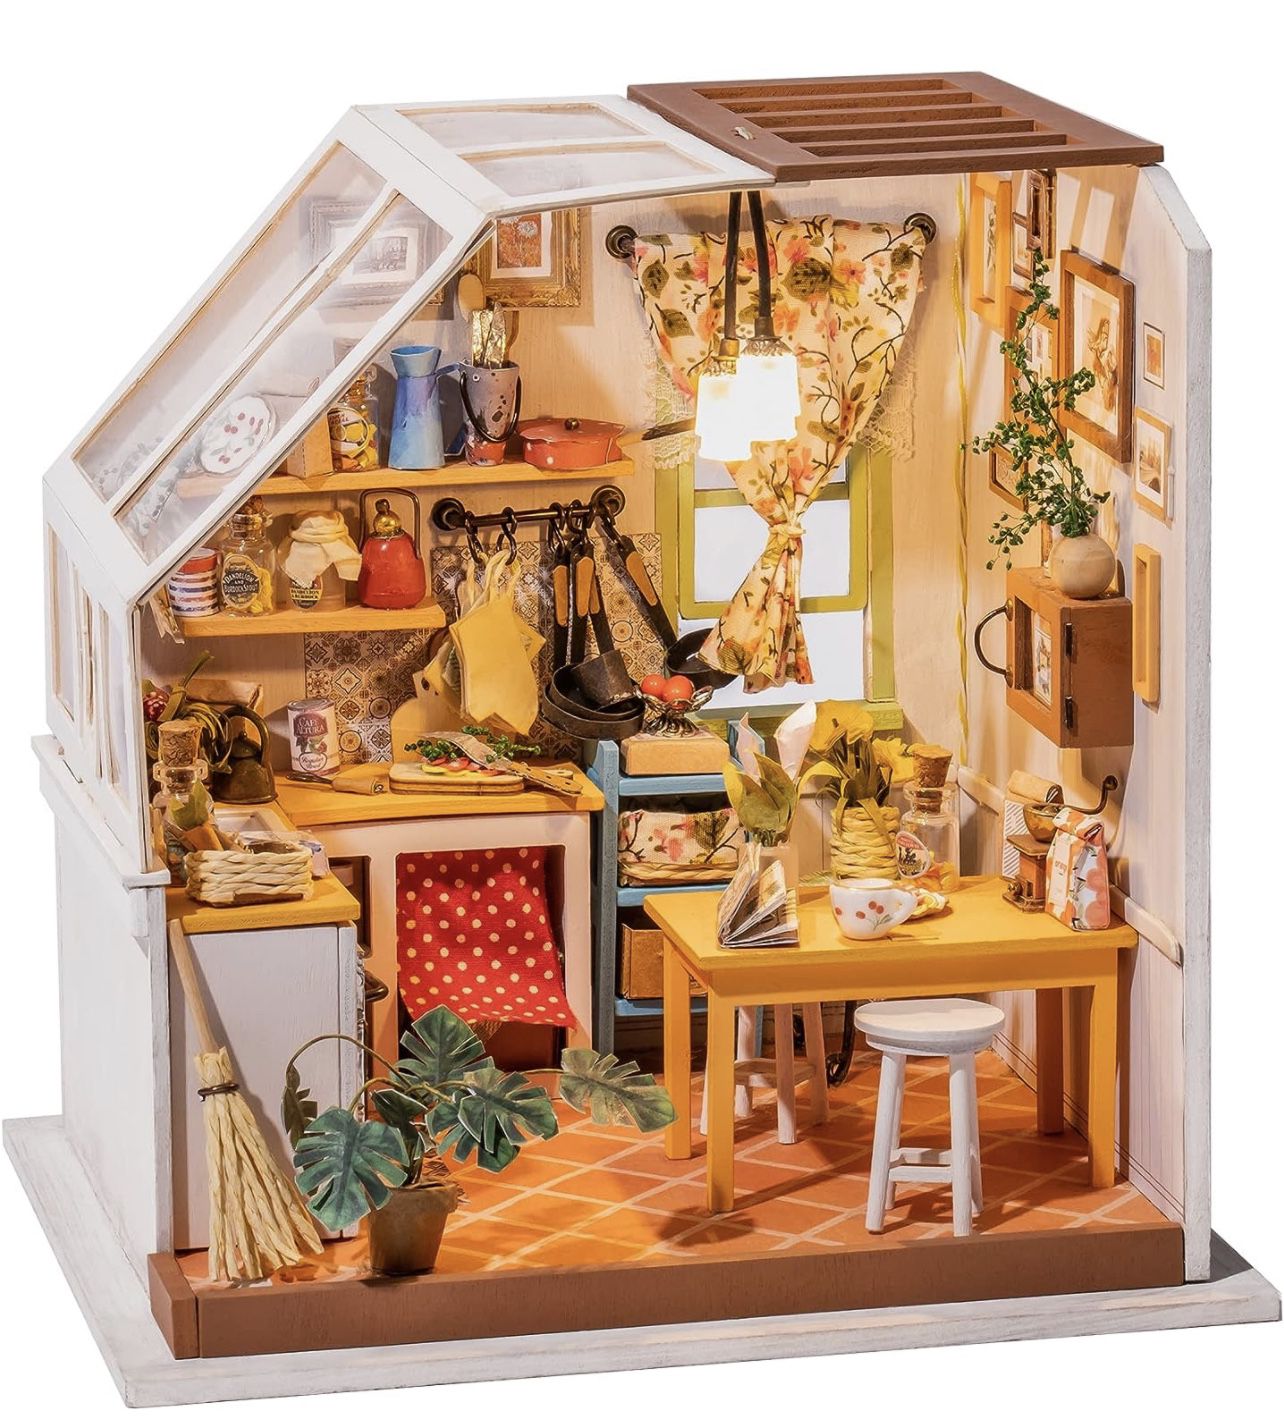 RoWood Miniature House Kit